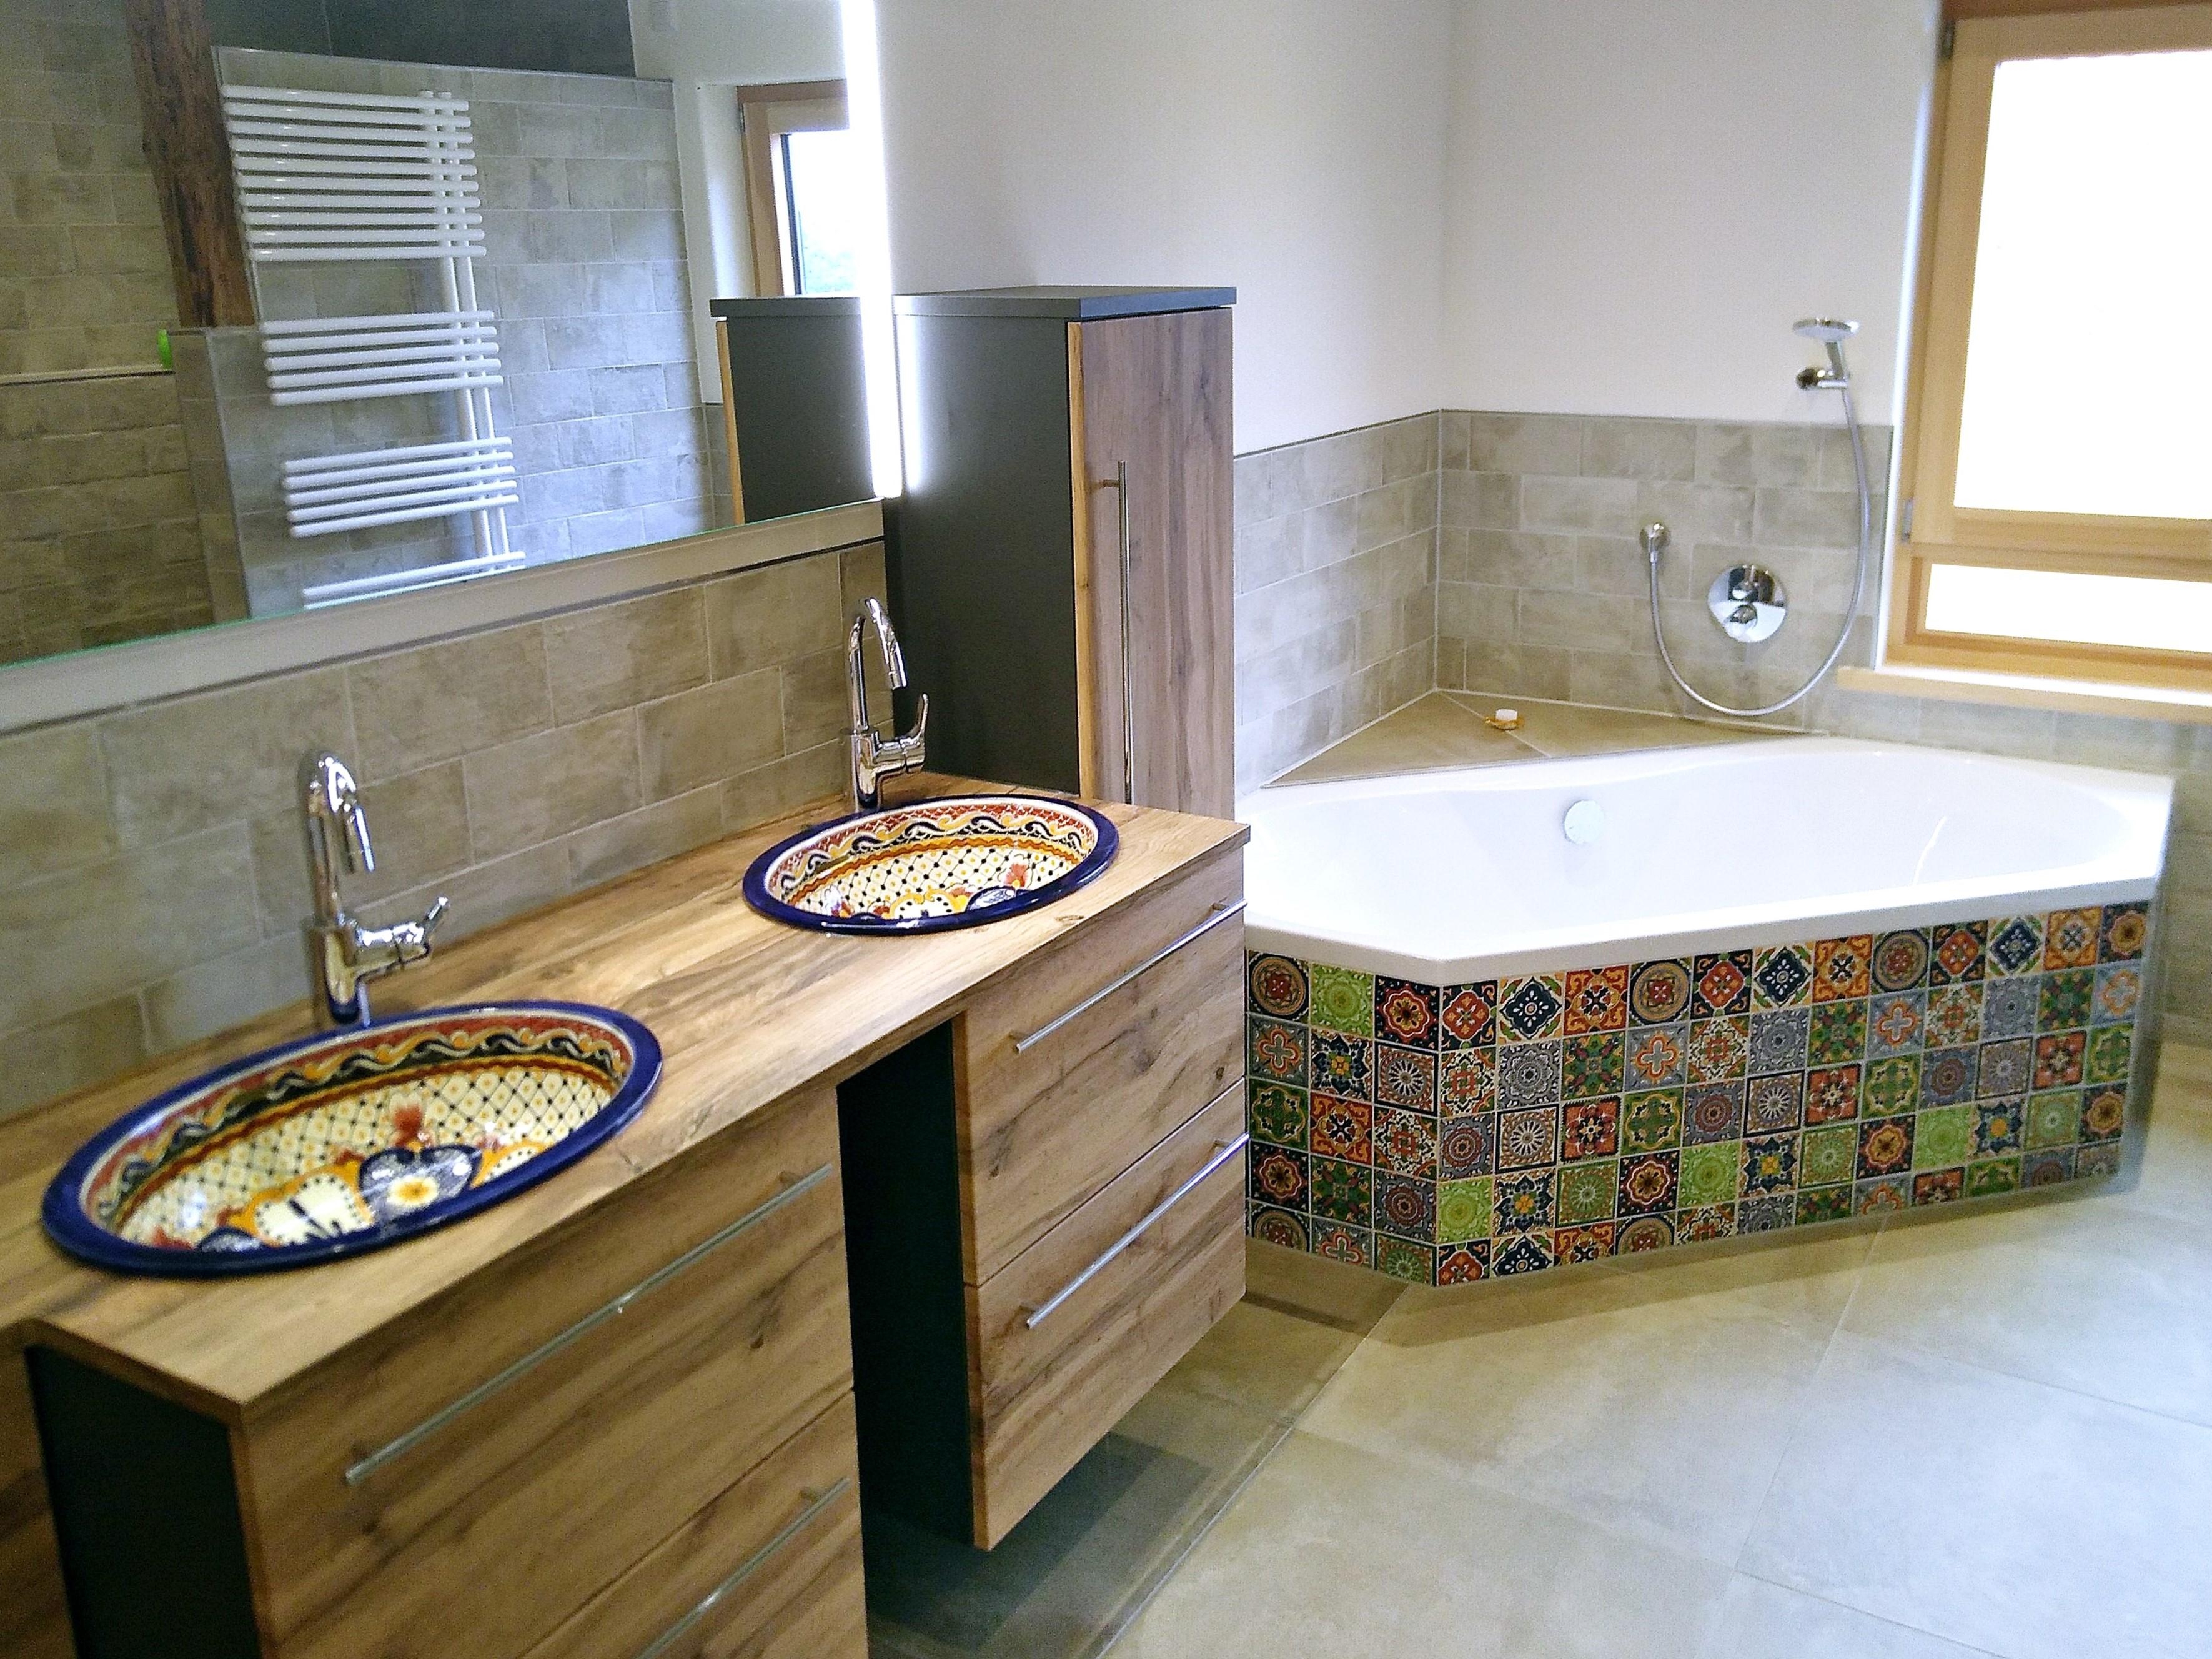 Bunt ist heute! #badezimmer #badewanne #fliesen #wandfliesen #waschbecken #holzwaschtisch #badezimmer #mexambiente #bunt